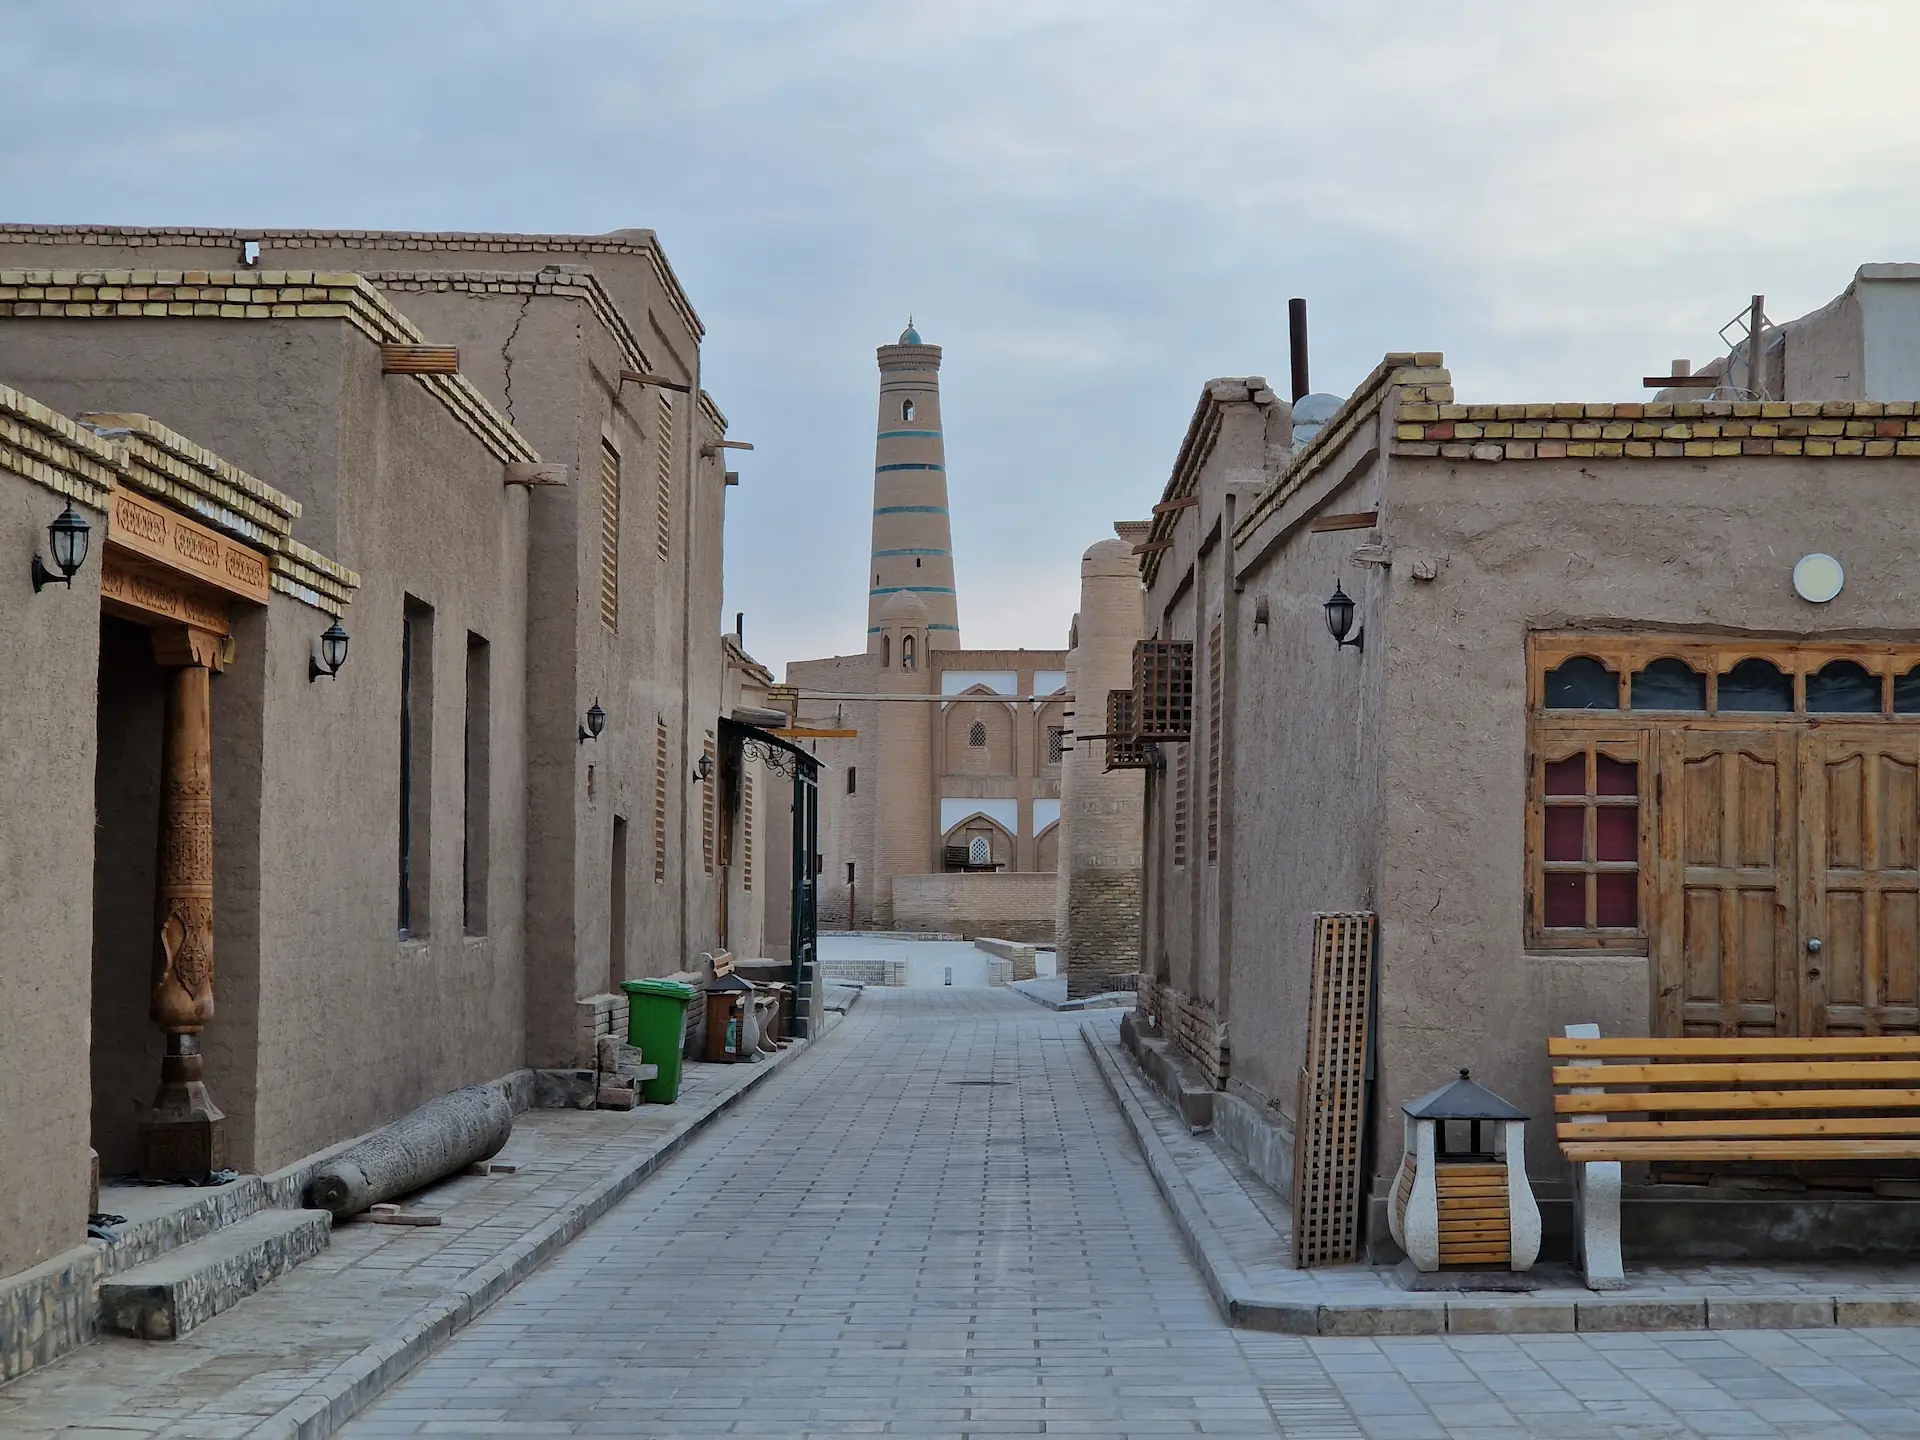 Rue bordée de maisons basses en terre-paille et aux fenêtres en bois. Au bout de la rue, on aperçoit un minaret.